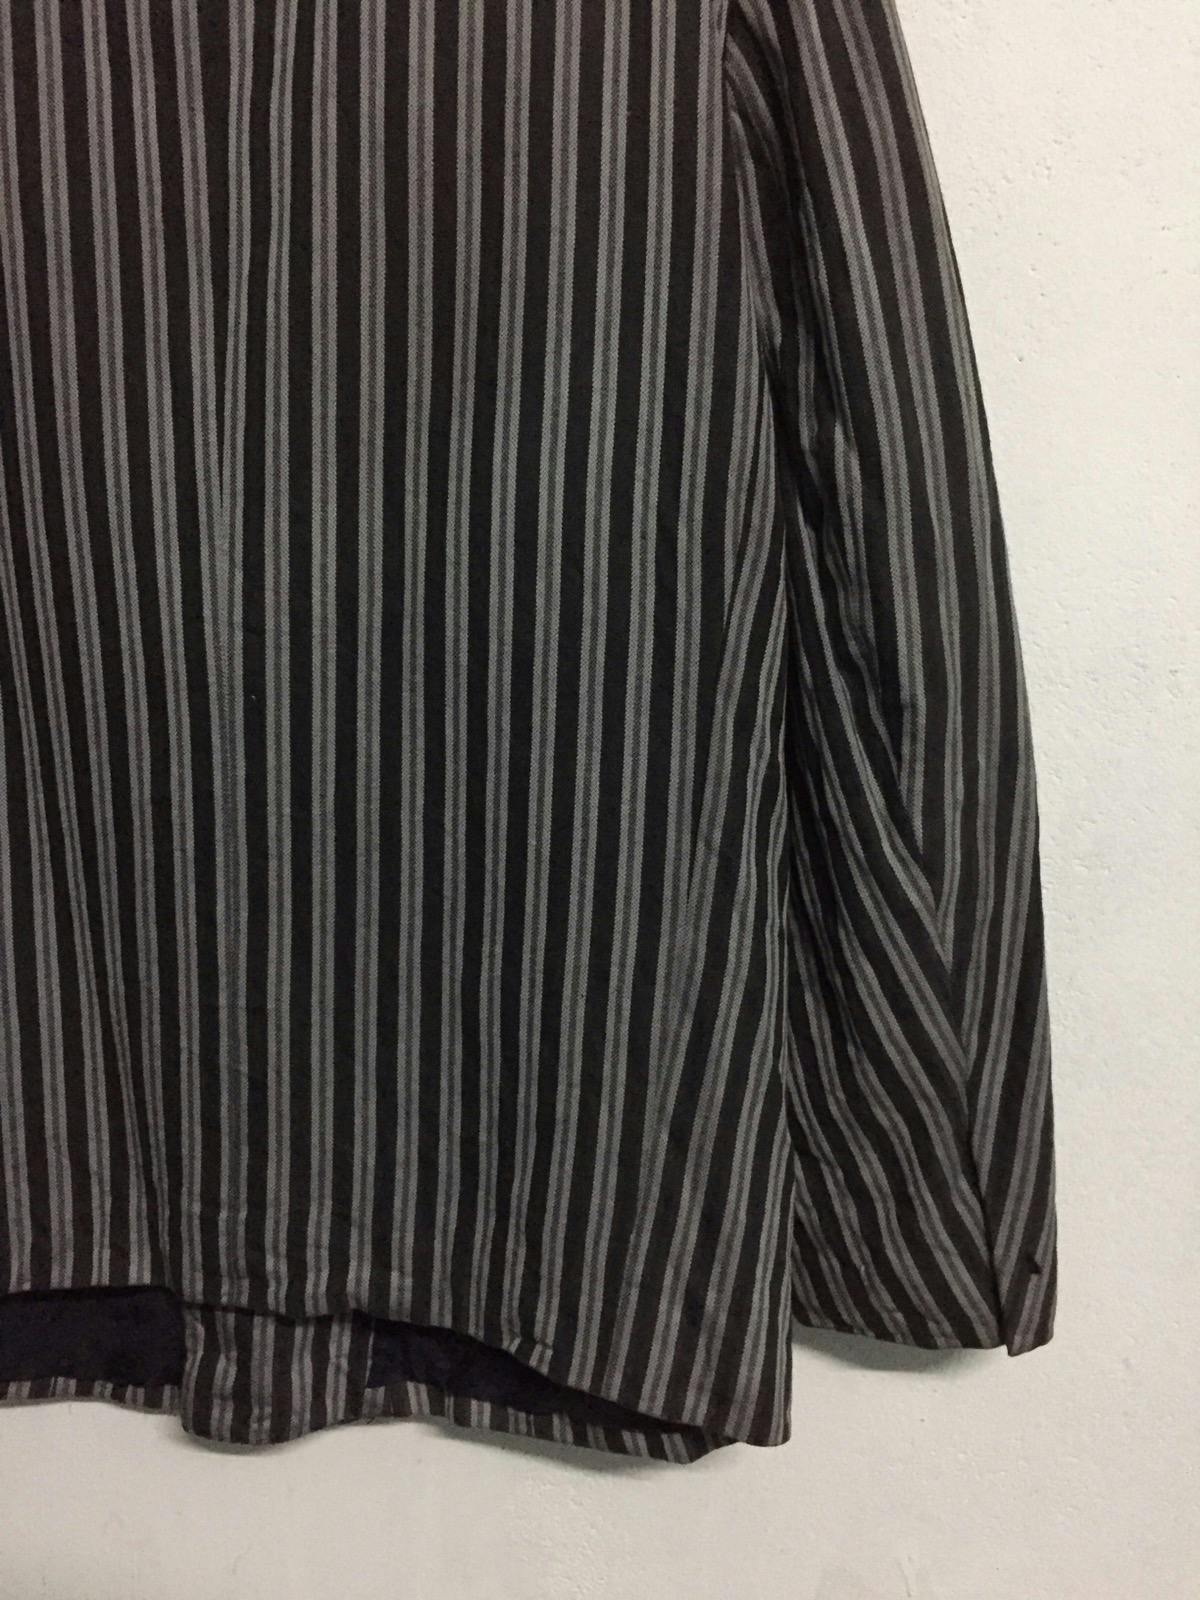 Kenzo Zebra Stripes Jacket Coat Made in Japan - 11